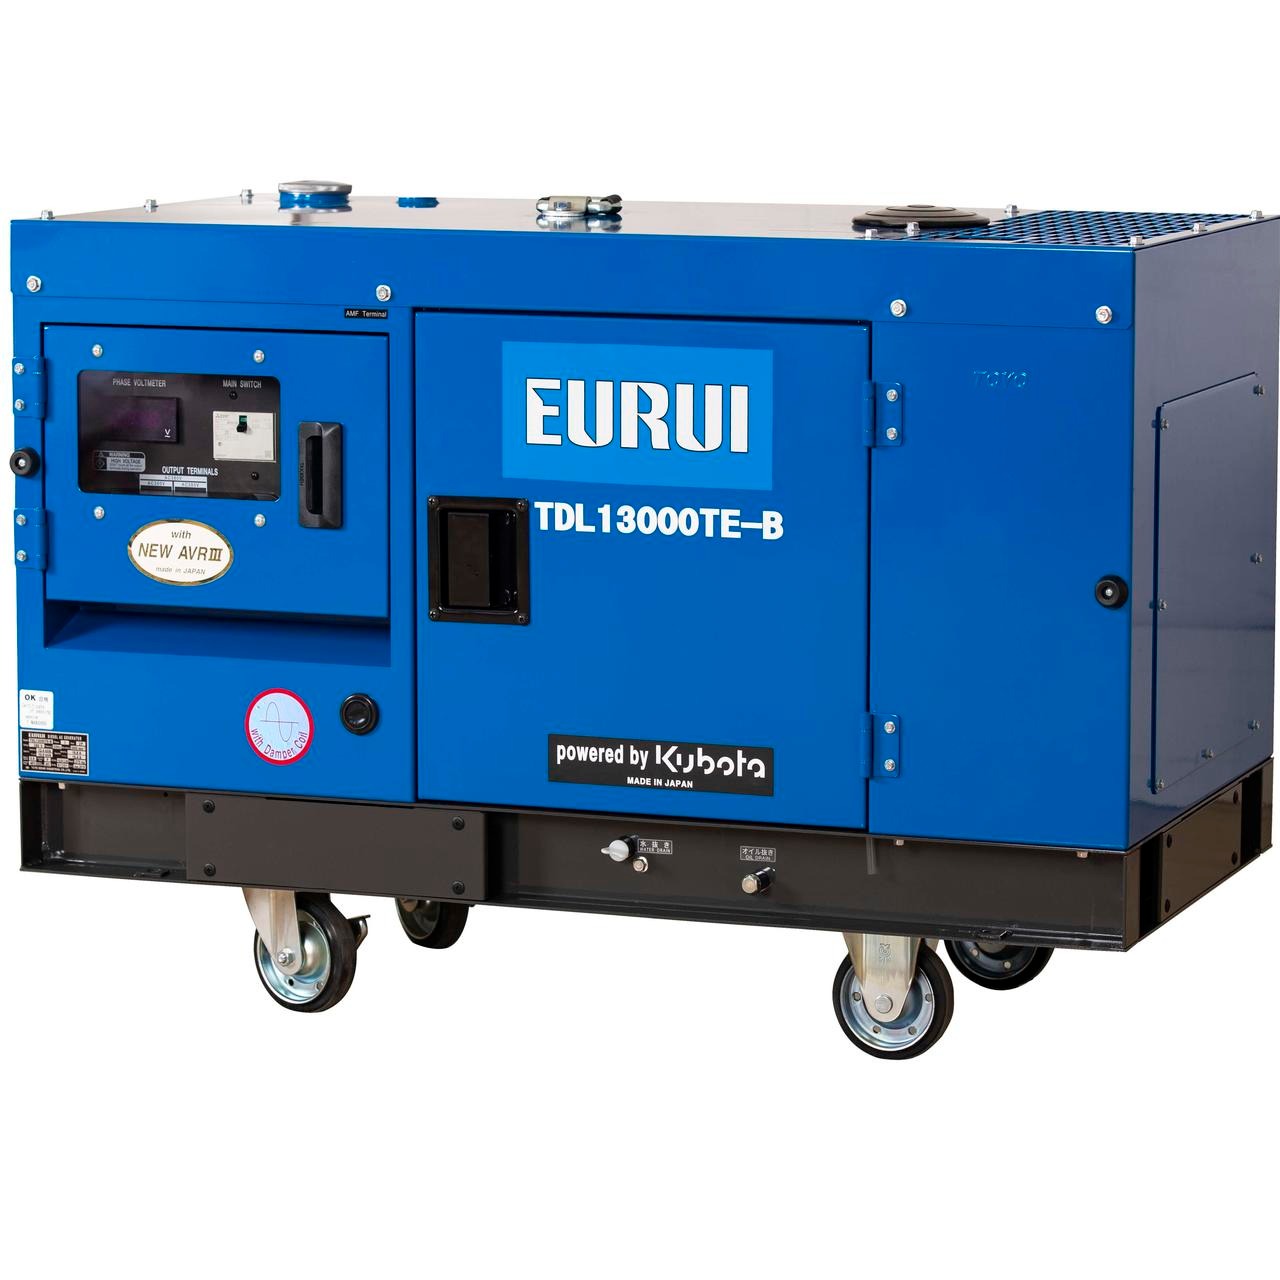 日本东洋EURUI 日本东洋柴油三相发电机 静音10.8kva发电机 TDL13000TE-B